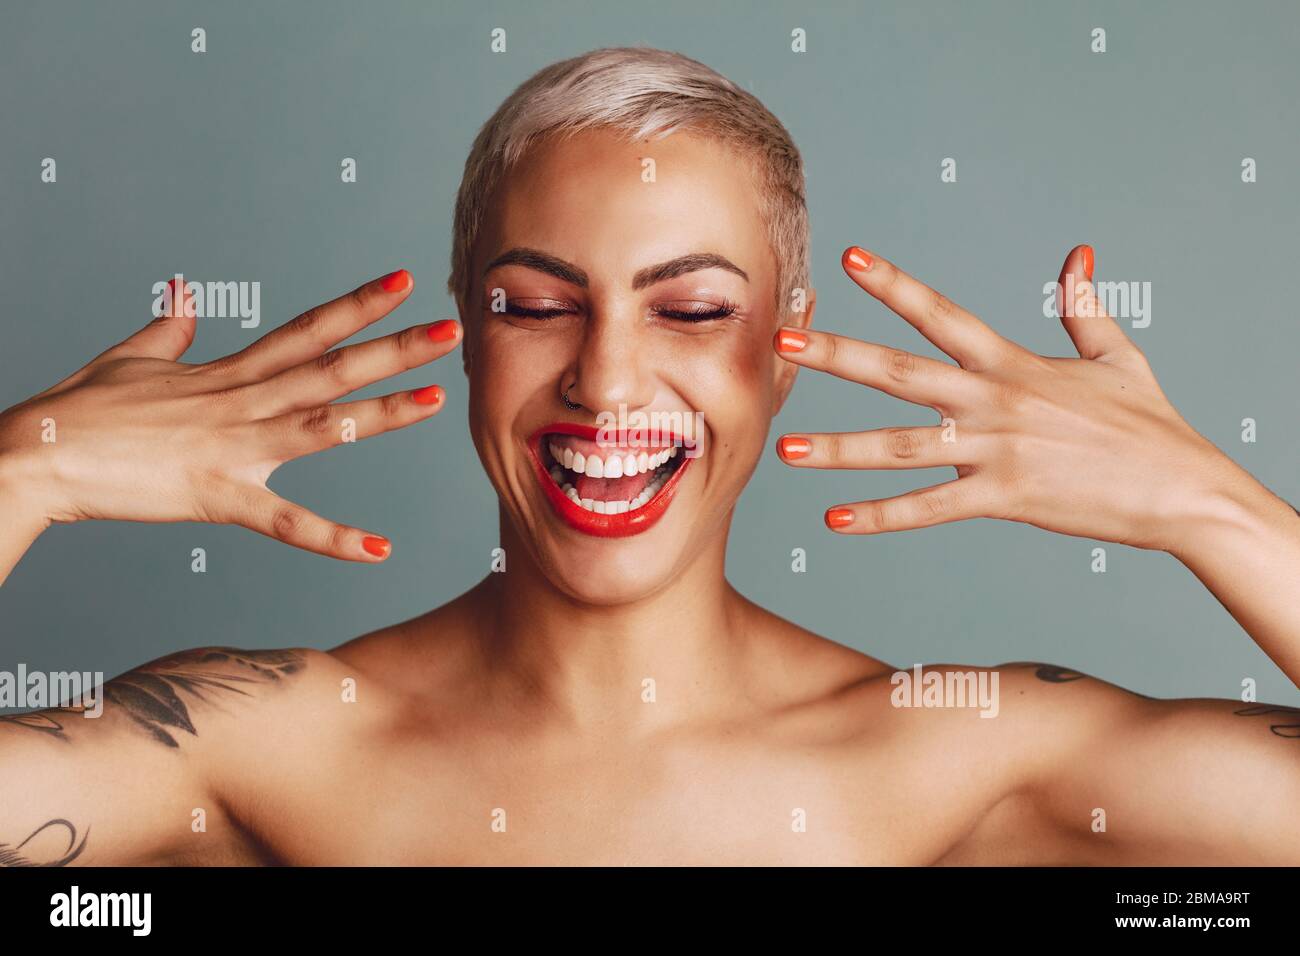 Aufgeregt Frau zeigt ihr Make-up. Weibliches Modell mit Lippenstift und Nagelfarbe lächelnd vor grauem Hintergrund. Stockfoto